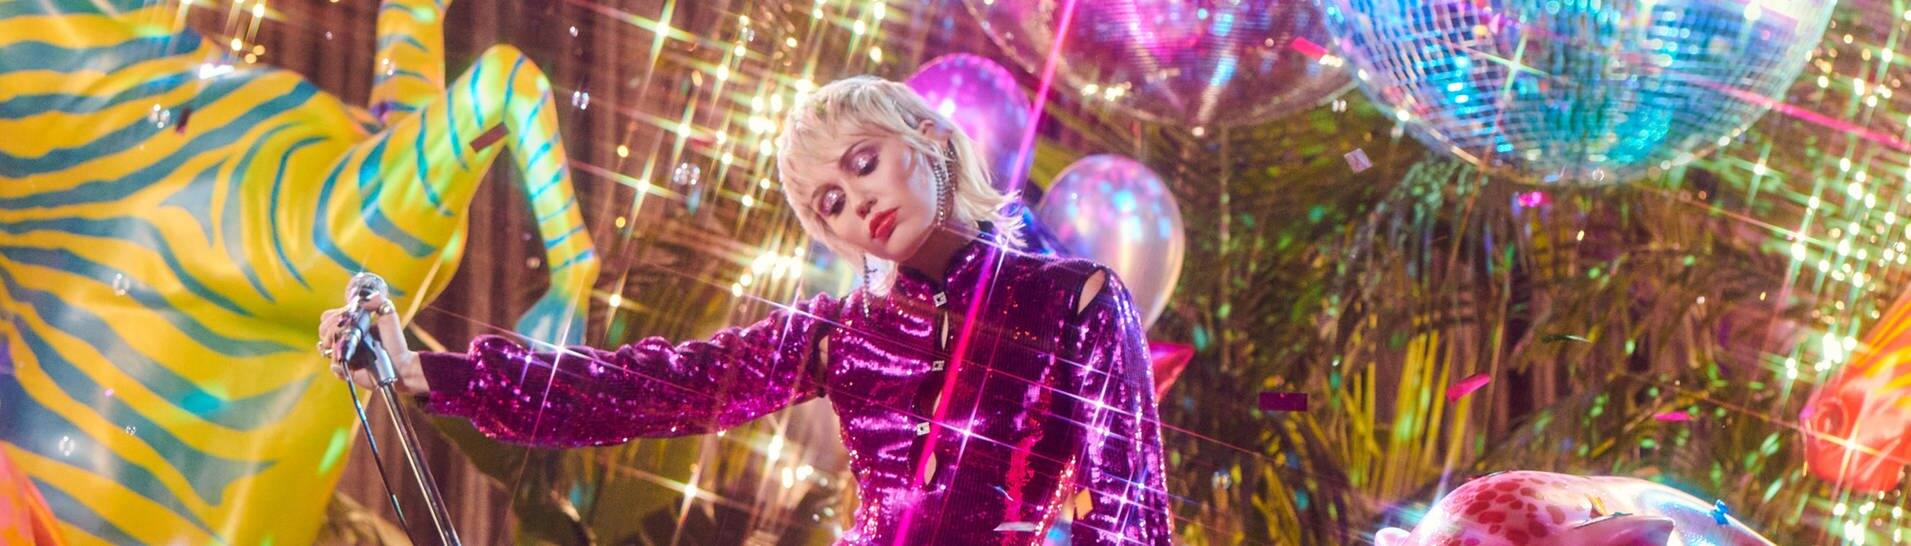 Die Sängerin Miley Cyrus vor einem bunten Hintergrund mit Discokugeln, Tierskulpturen und Luftballlons. (Foto: Sony Music)